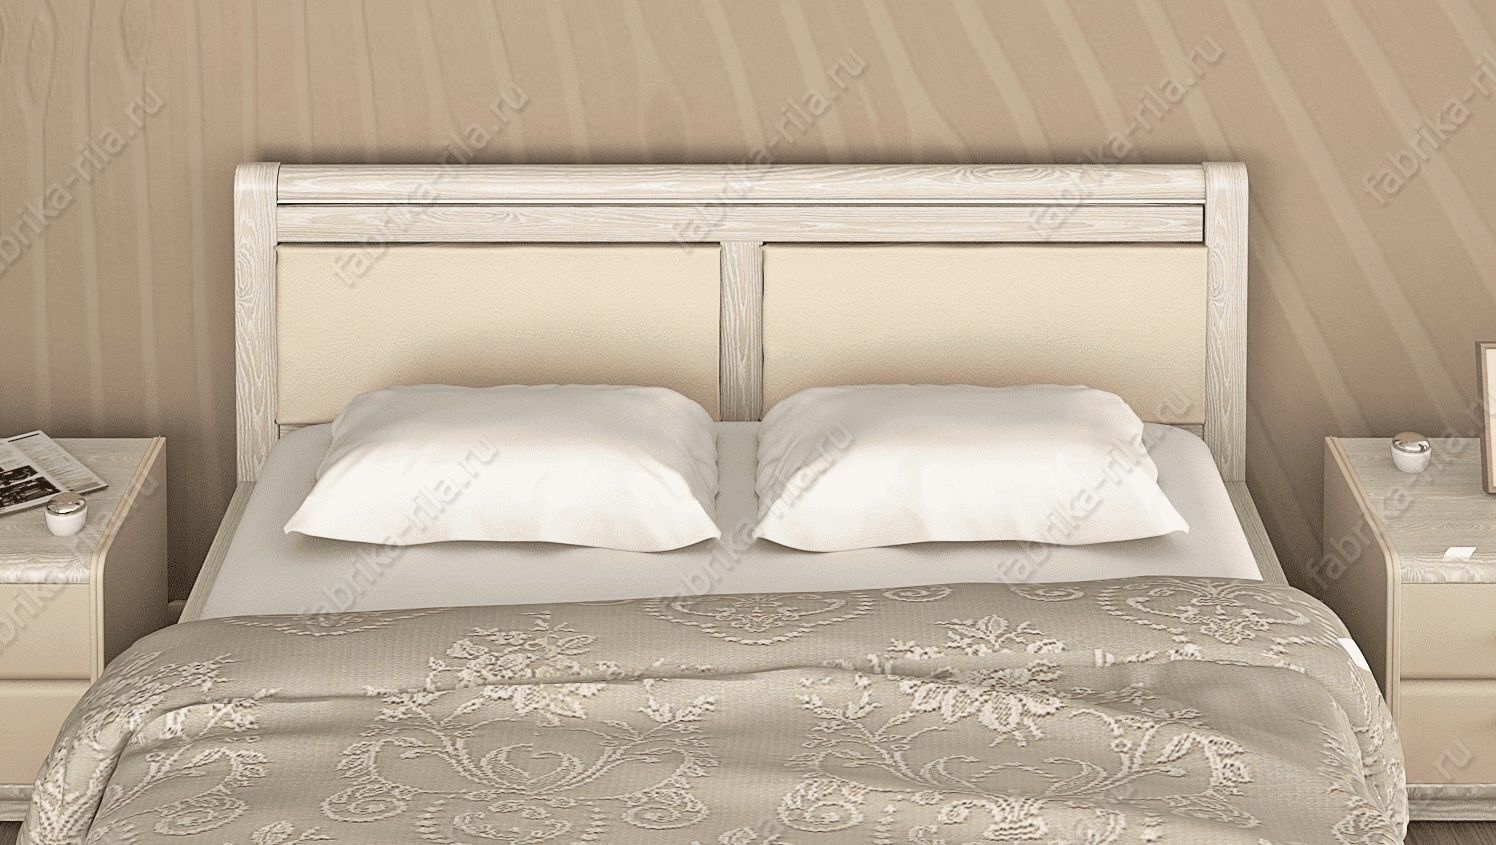 Кровать Okaeri 5 — 120x200 см. из сосны